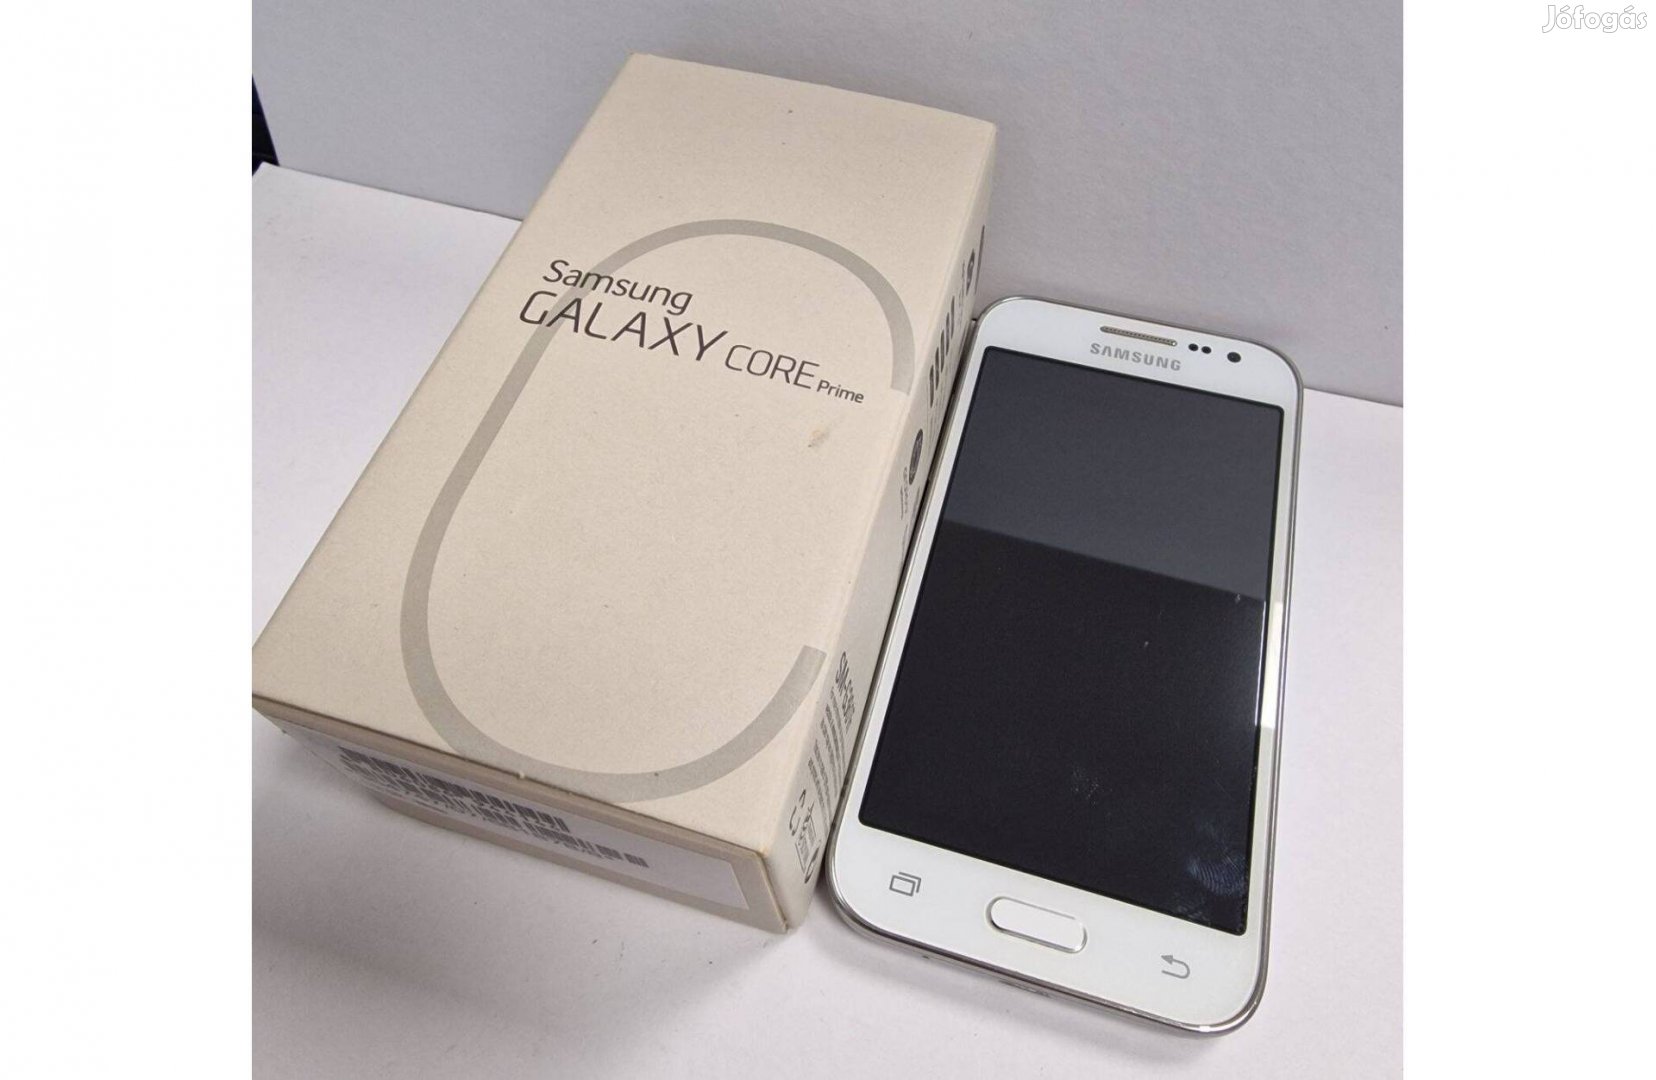 Samsung Galaxy Core Prime független, újszerű mobil dobozában eladó